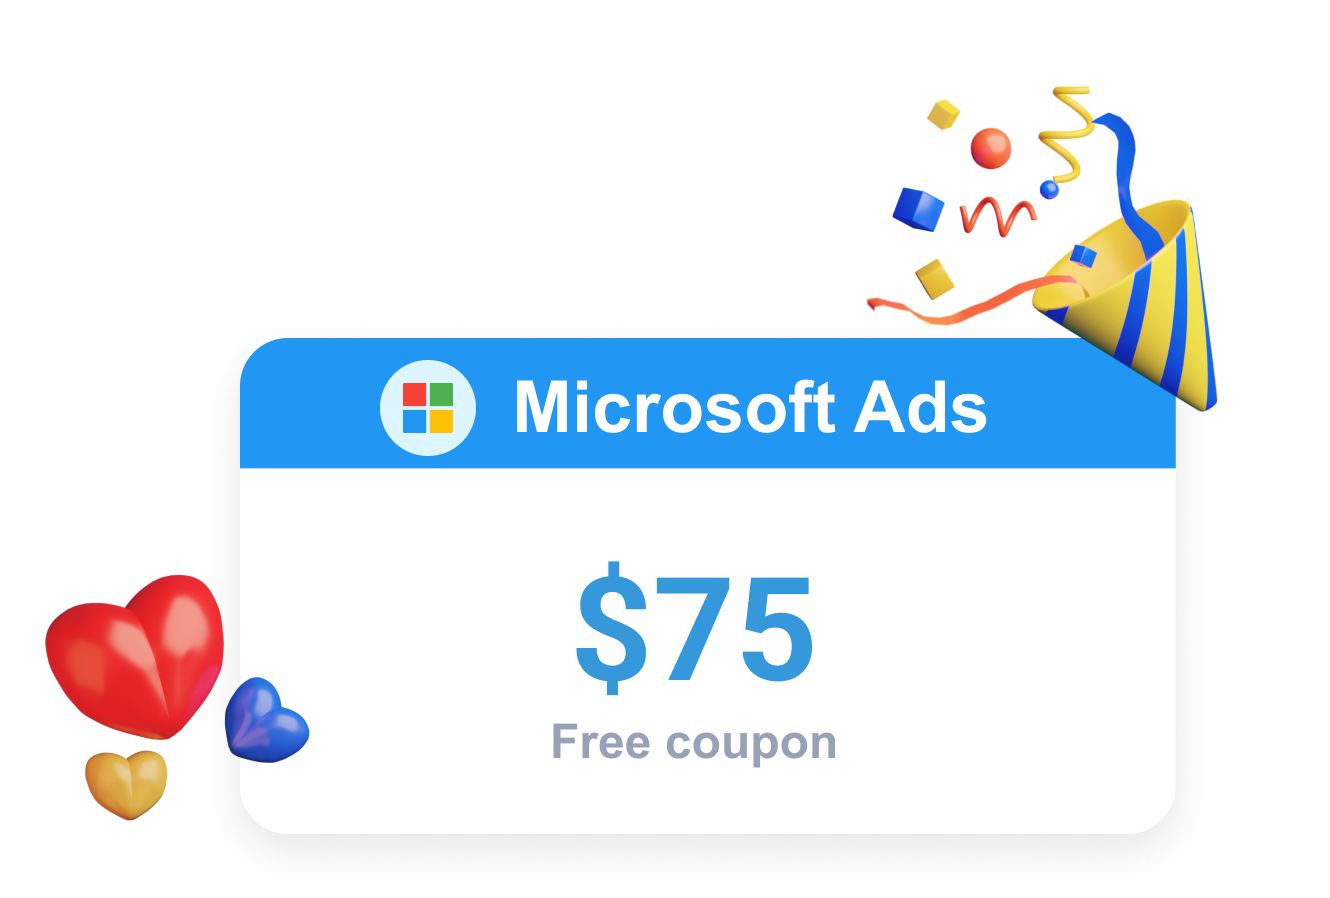  Clever Ads  เสนอโปรโมชั่น Microsoft  Ads  ในรูปแบบของคูปอง Bing  Ads  ฟรี